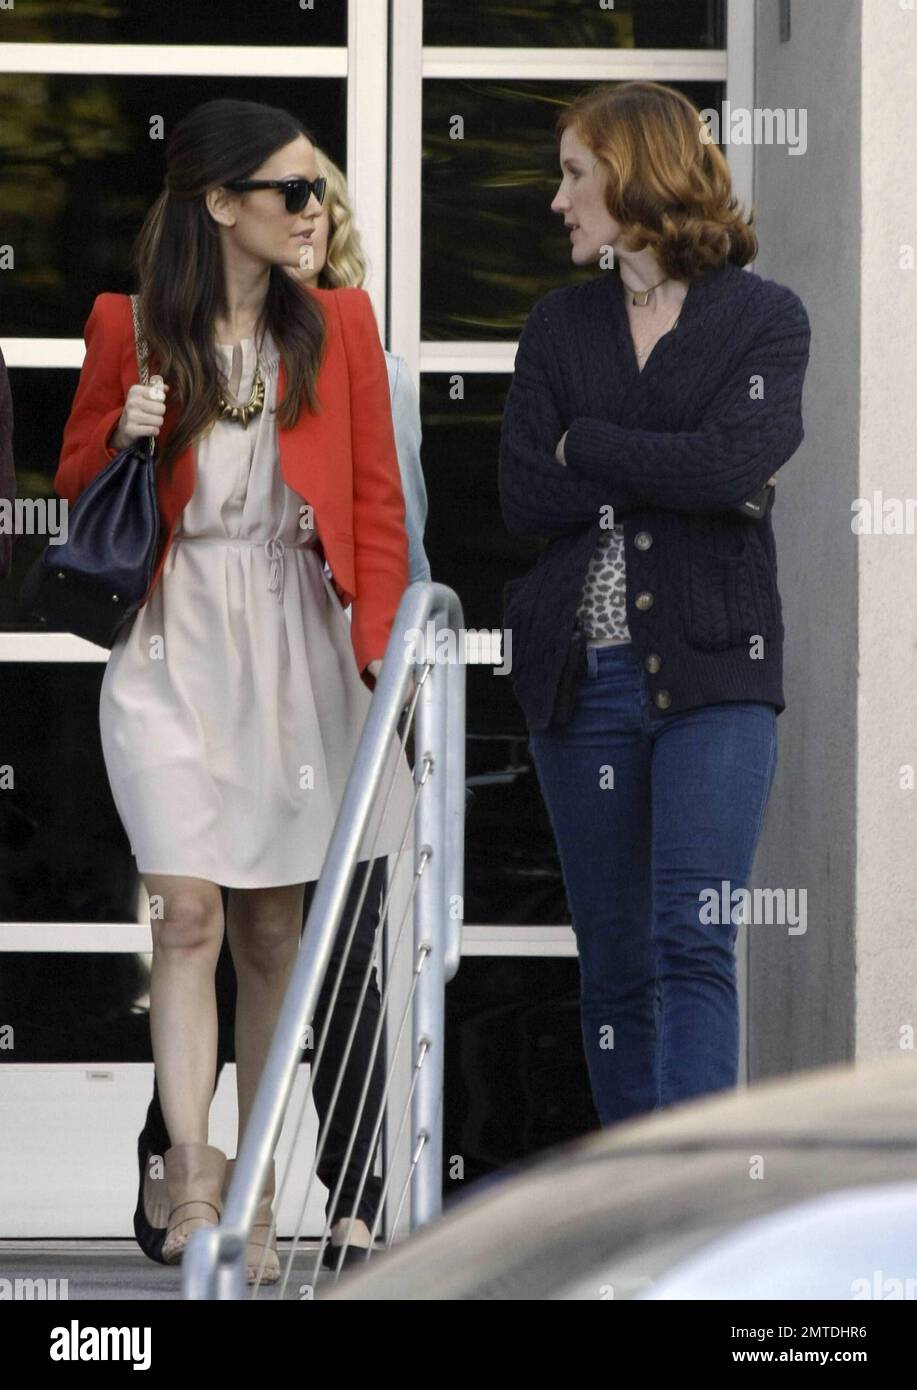 Vistiendo una chaqueta roja y un sencillo blanco, la actriz Rachel Bilson deja los estudios 'Chelsea Latently' después de una aparición en el programa. Rachel actualmente está promocionando su nueva película '